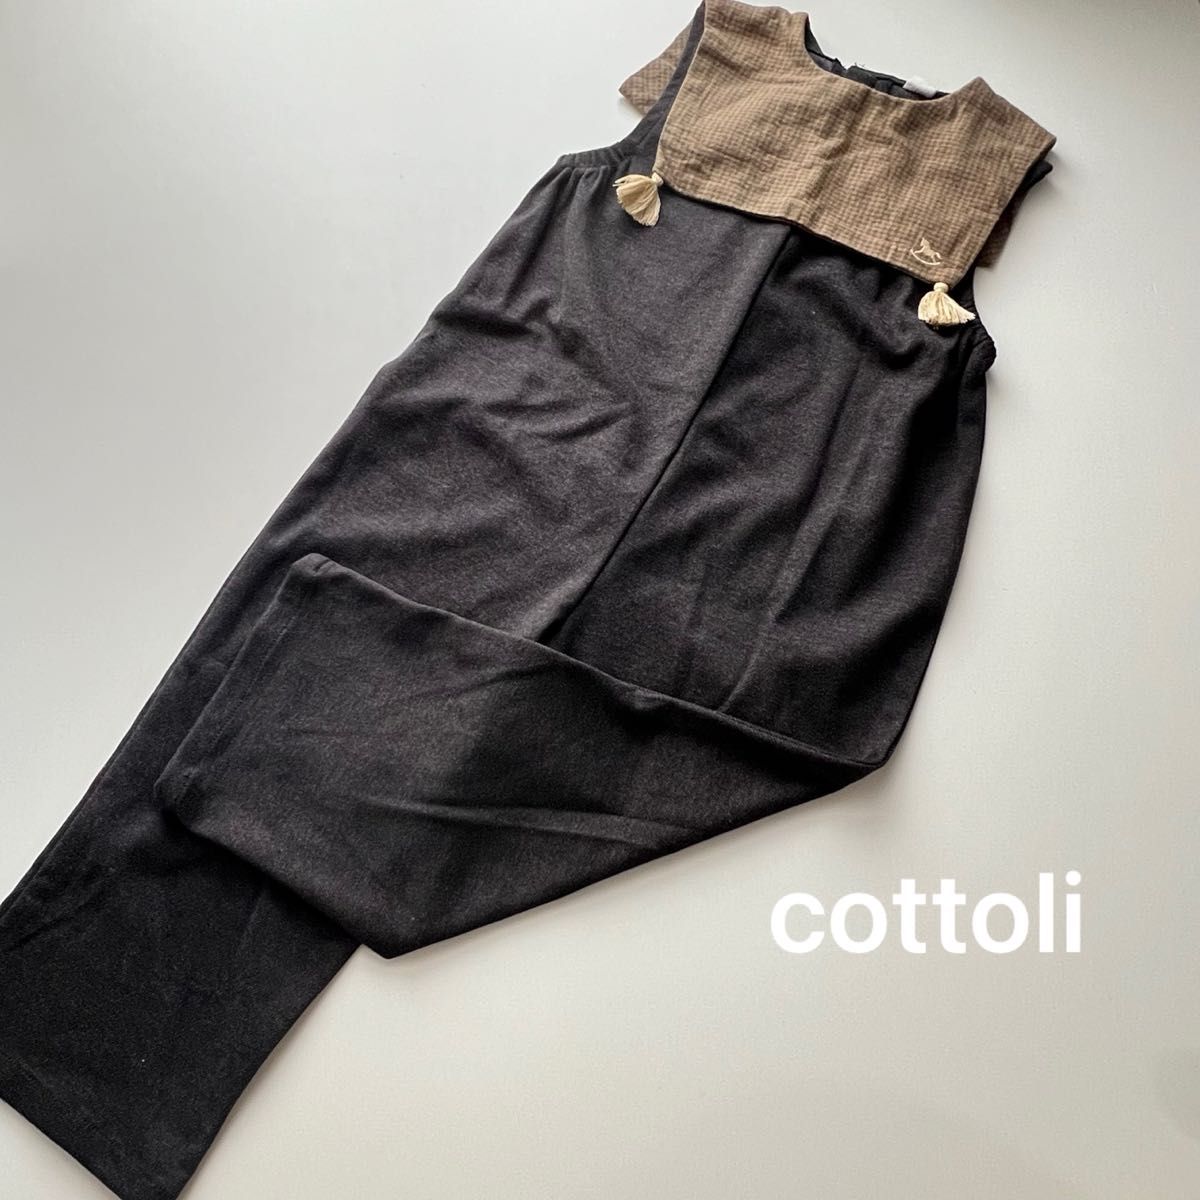 『cottoli』襟付きサロペット / 120